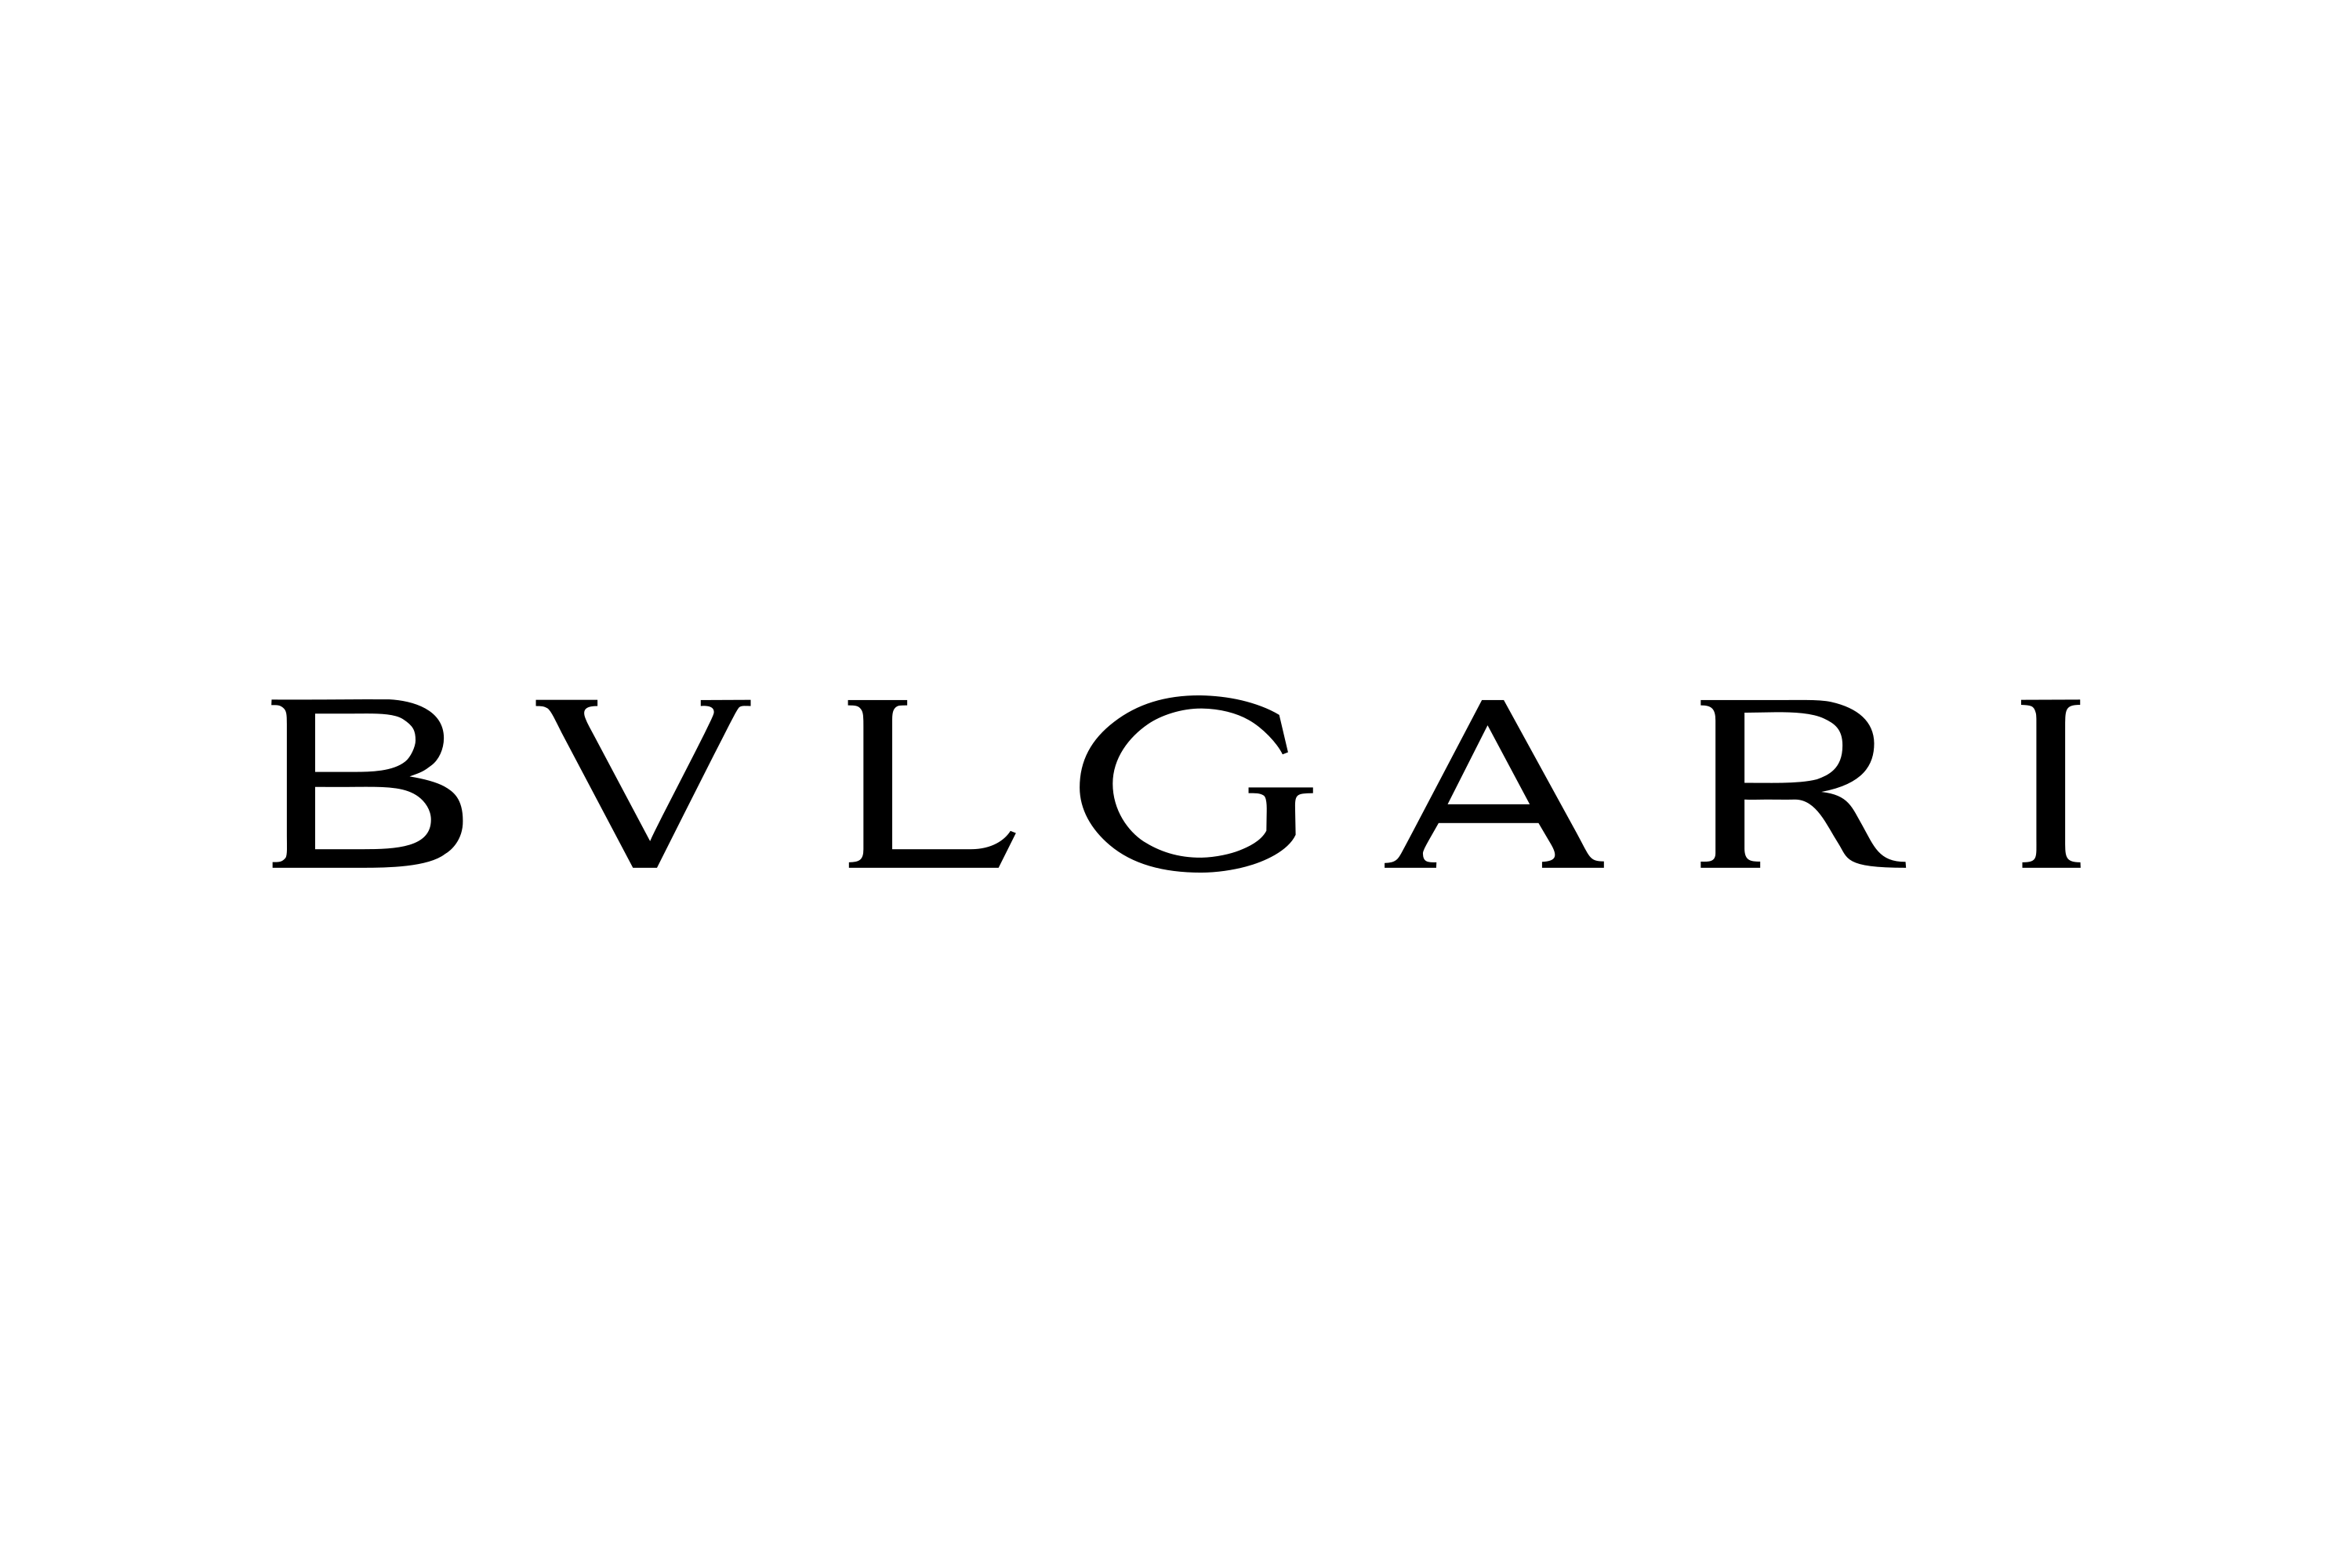 Download Bulgari (Bvlgari) Logo In Svg Vector Or Png File Format Pluspng.com  - Bvlgari, Transparent background PNG HD thumbnail